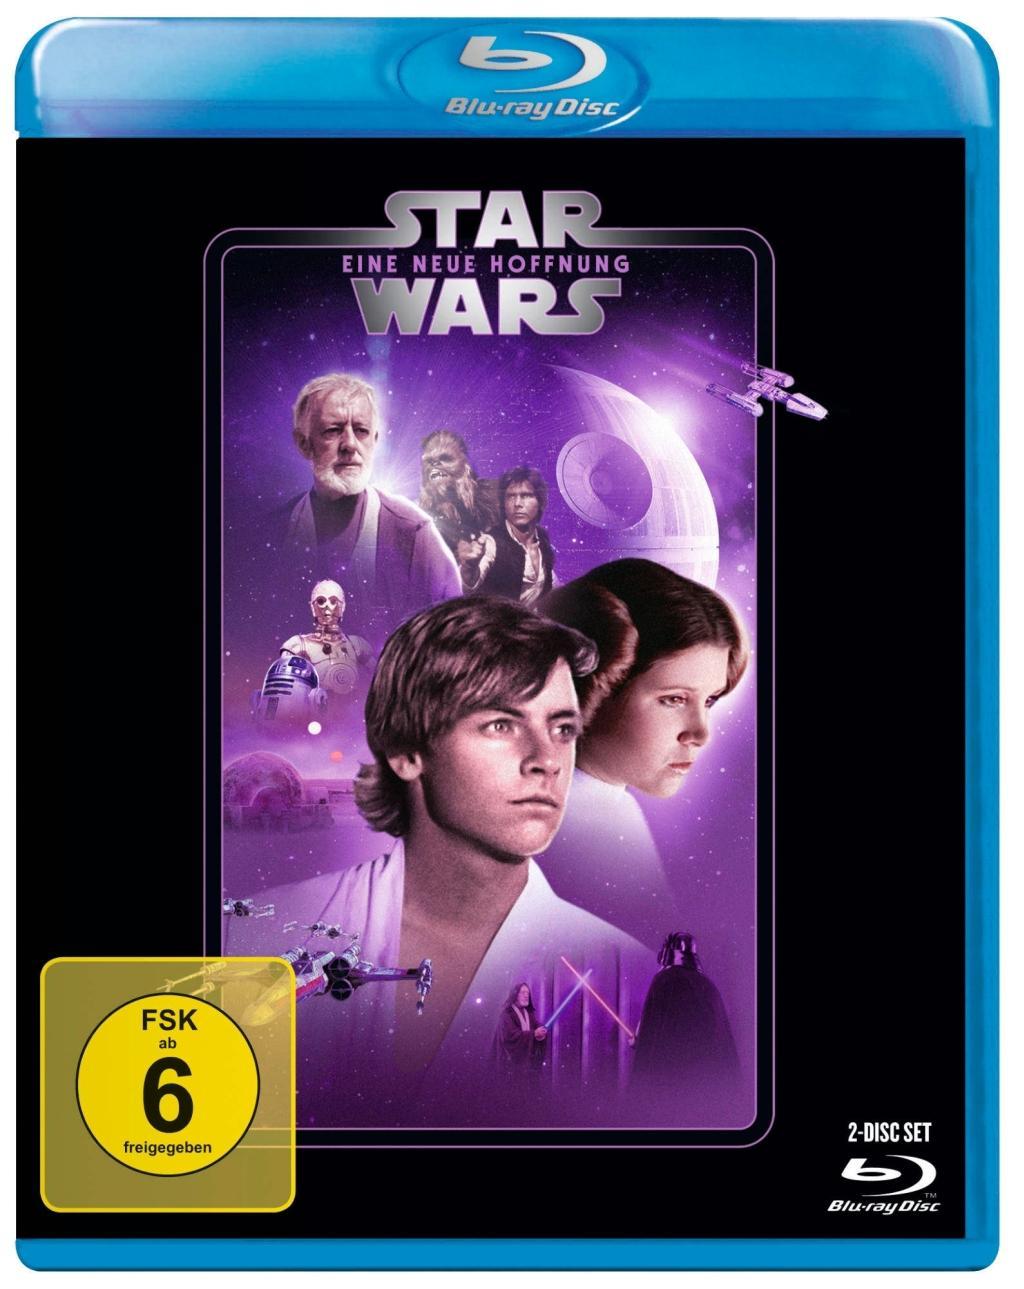 Videoclip Star Wars Episode 4, Eine neue Hoffnung, 1 Blu-ray George Lucas